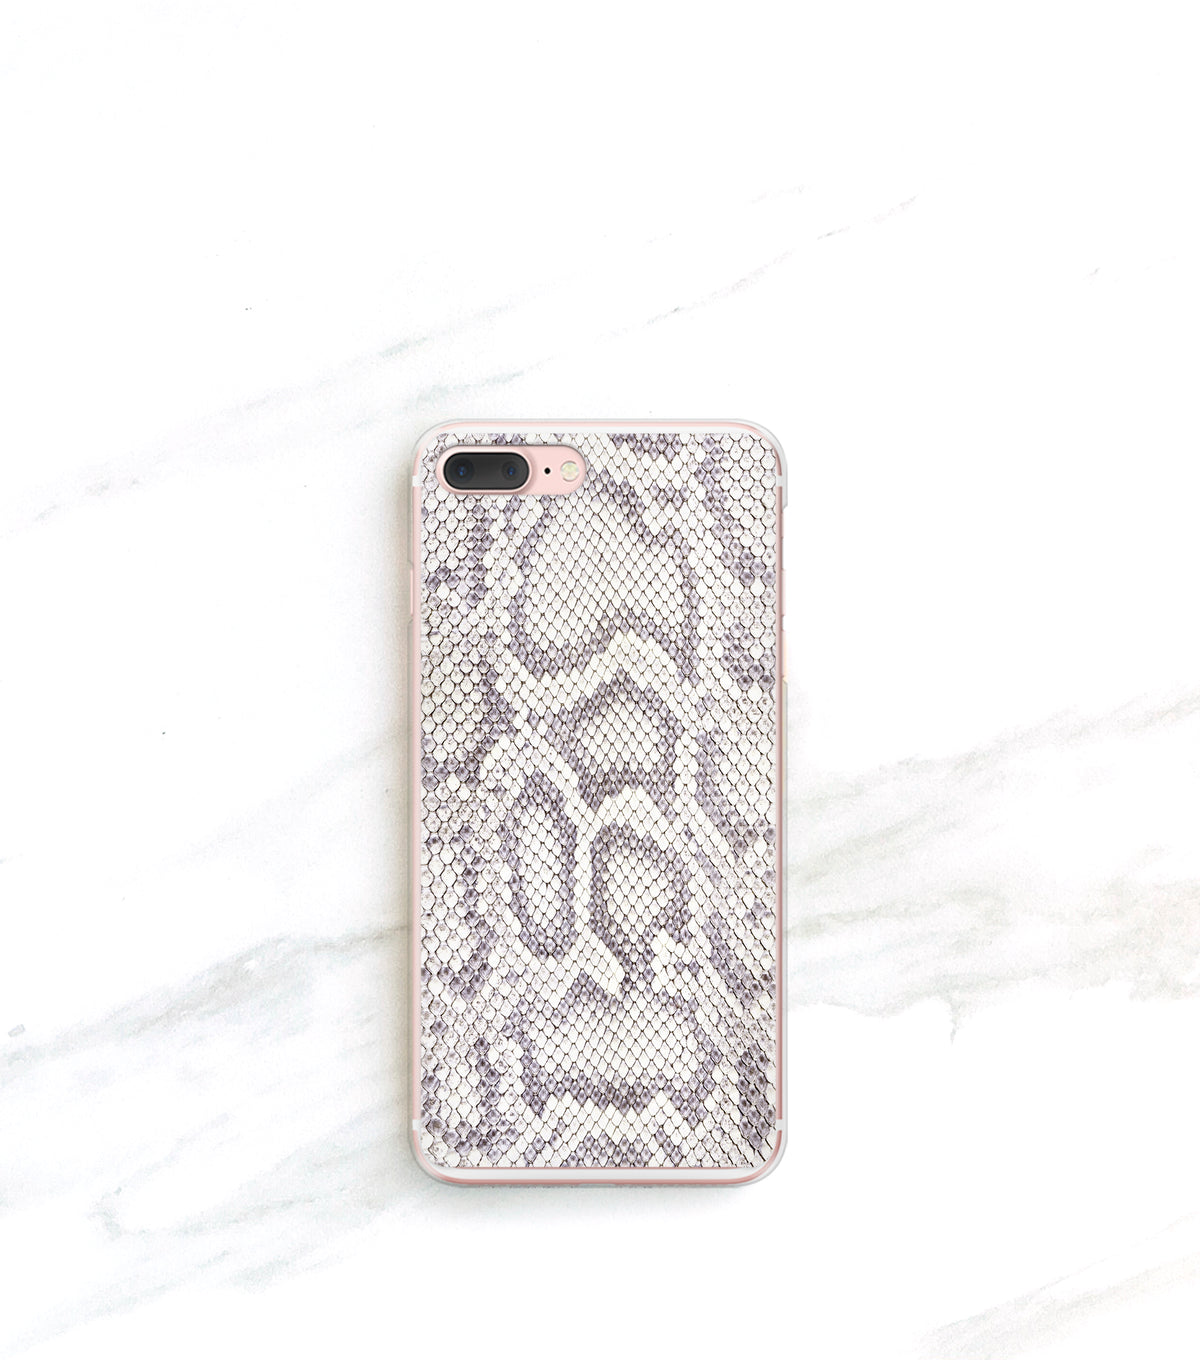 White Snowflakes Case for iPhone - Joy Merryman Store